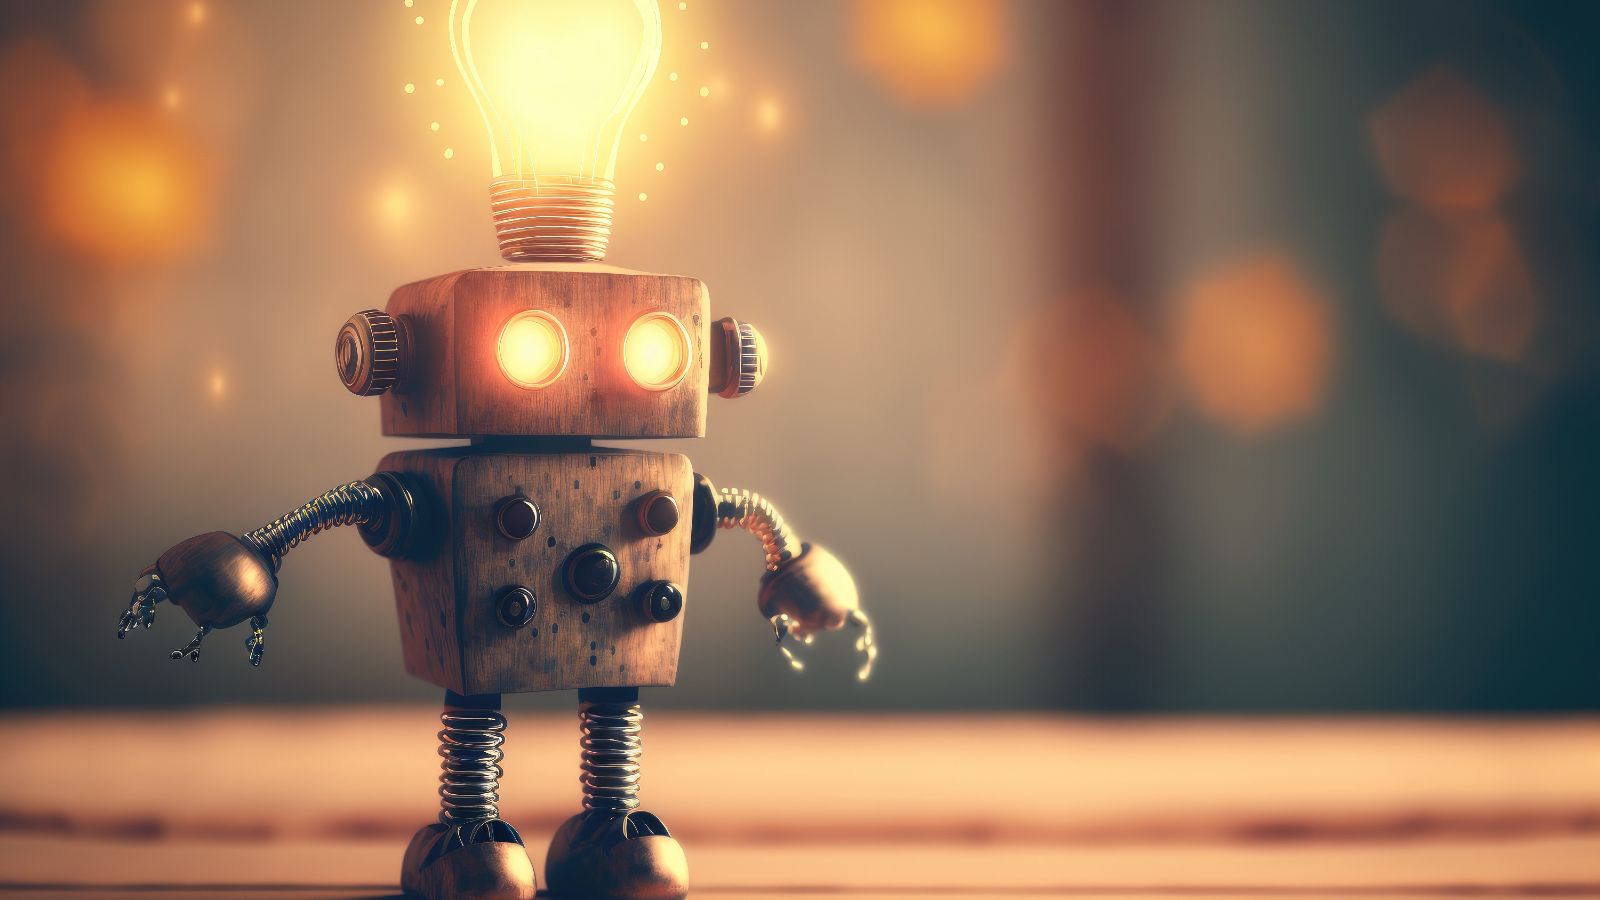 Ein kleiner Metall-Roboter steht auf einer Fläche und hat eine leuchtende Glühbirne auf dem Kopf